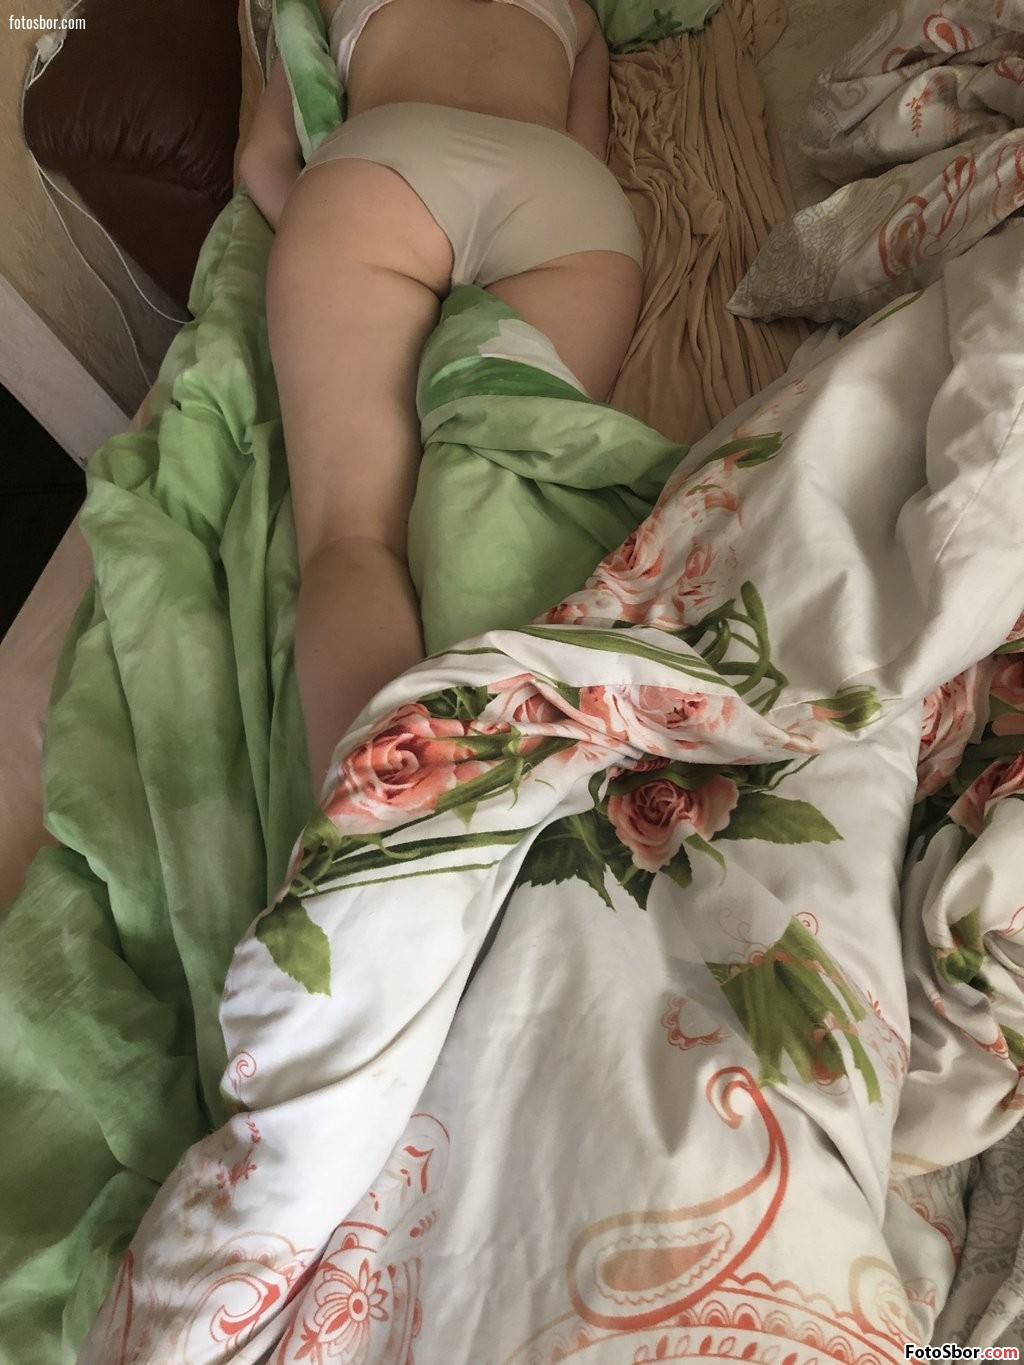 Порно фото Спит в нижнем белье после траха смотреть бесплатно